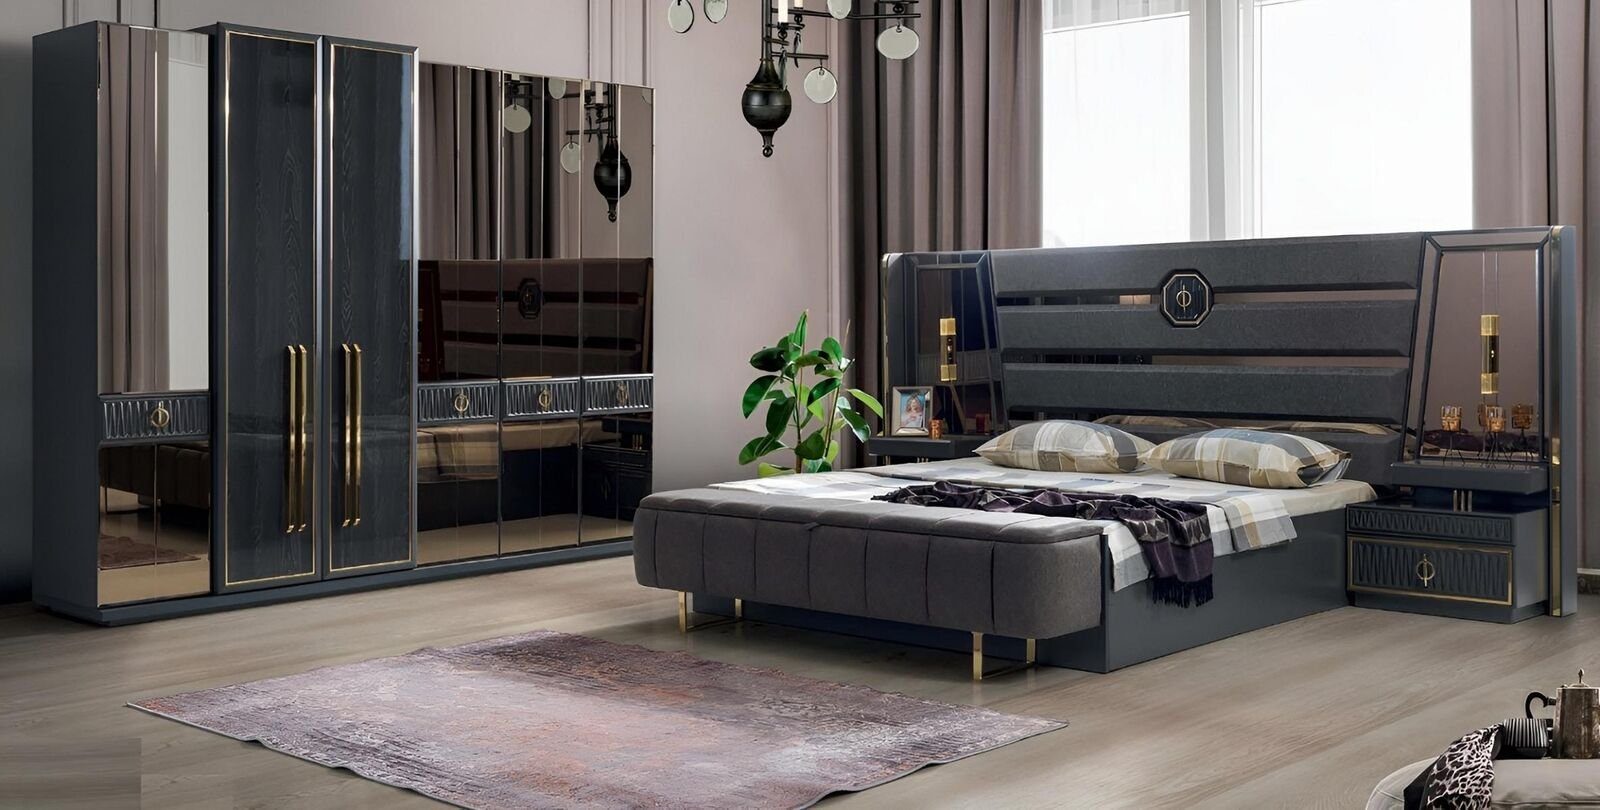 JVmoebel Schlafzimmer-Set Europe Nachttische / Bett Set Luxus Design (Bett In / 2x Schlafzimmer Doppel Komplett Made Kleiderschrank), Kleiderschrank